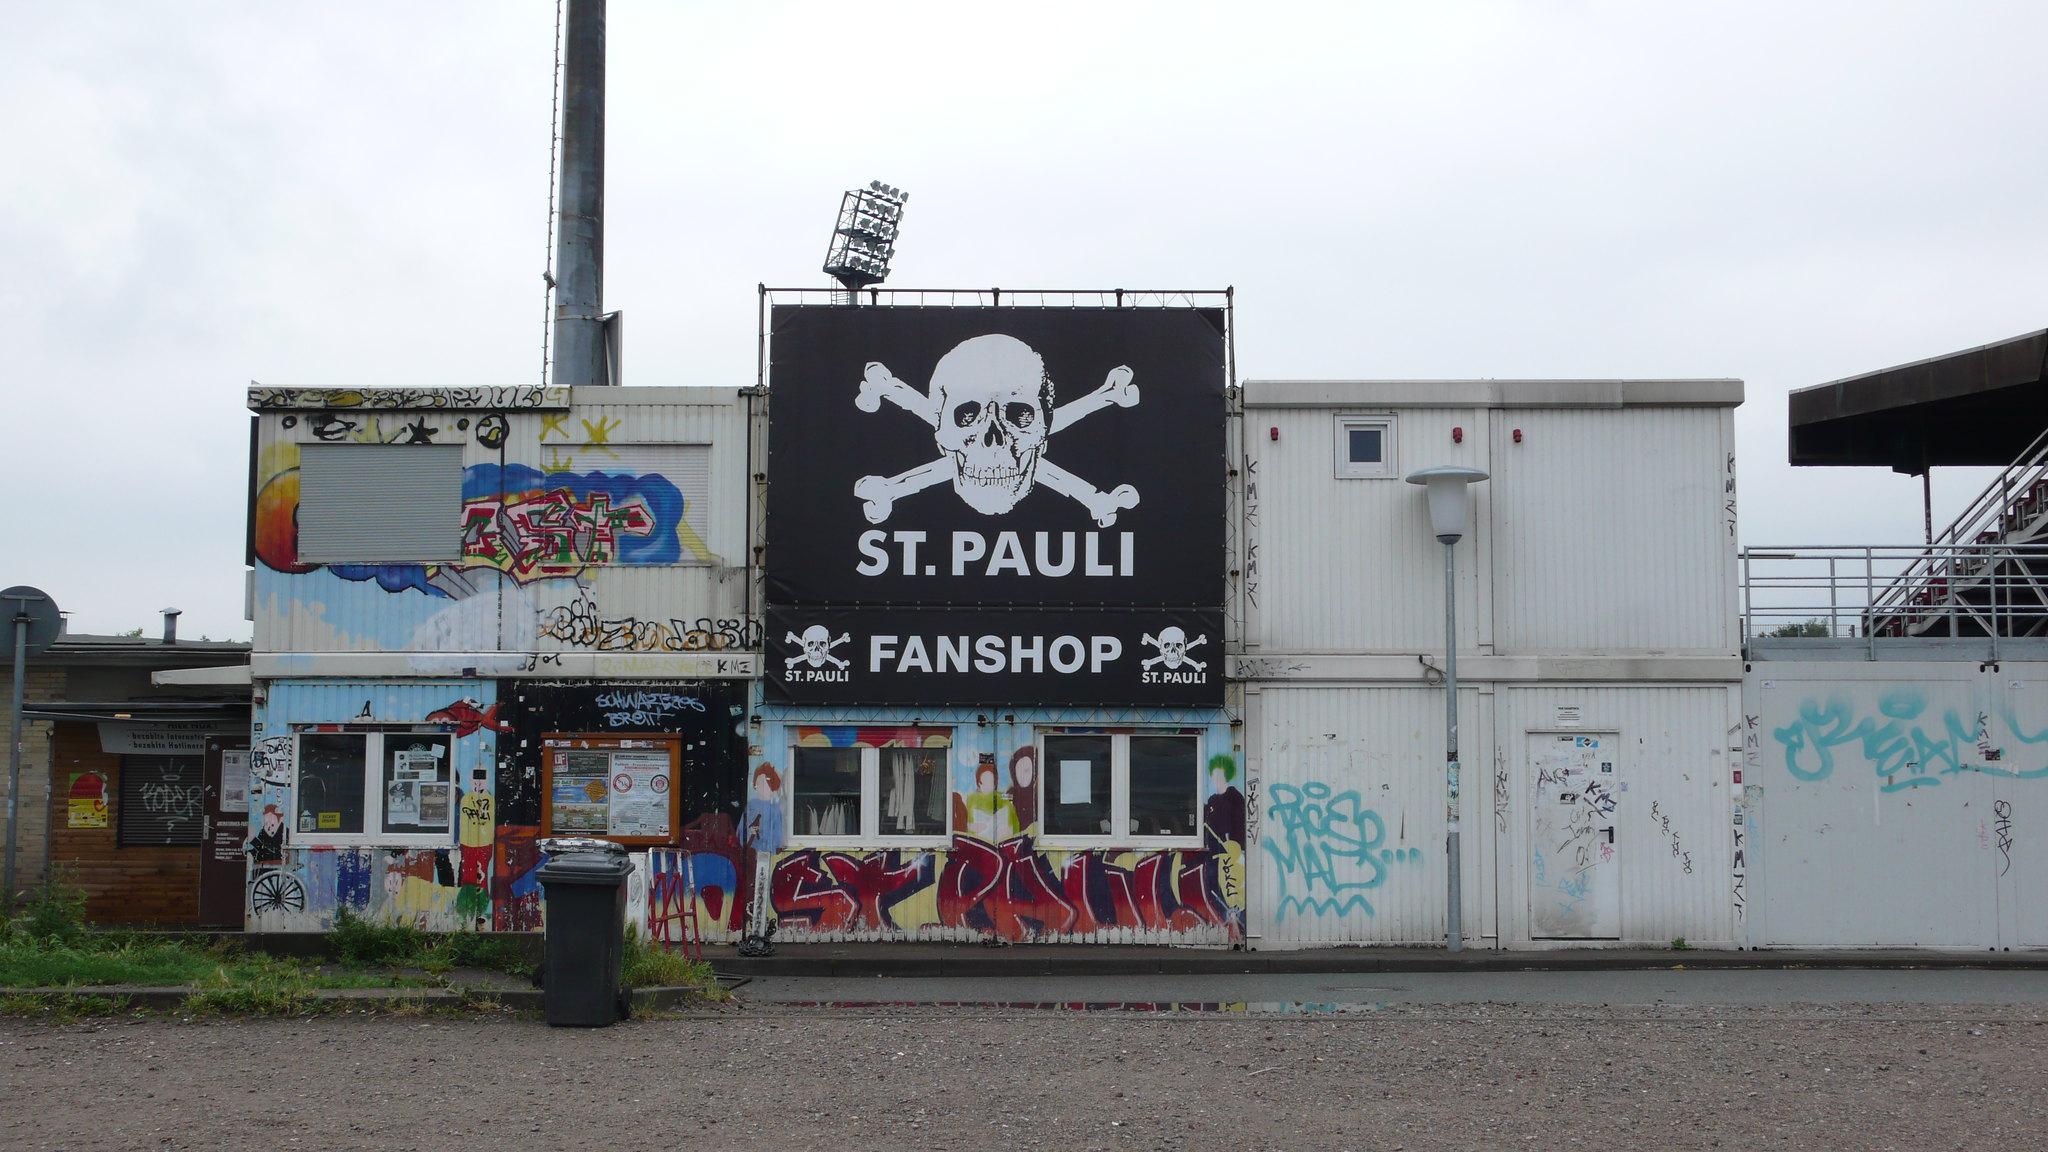 La bandera pirata, símbolo del St. Pauli